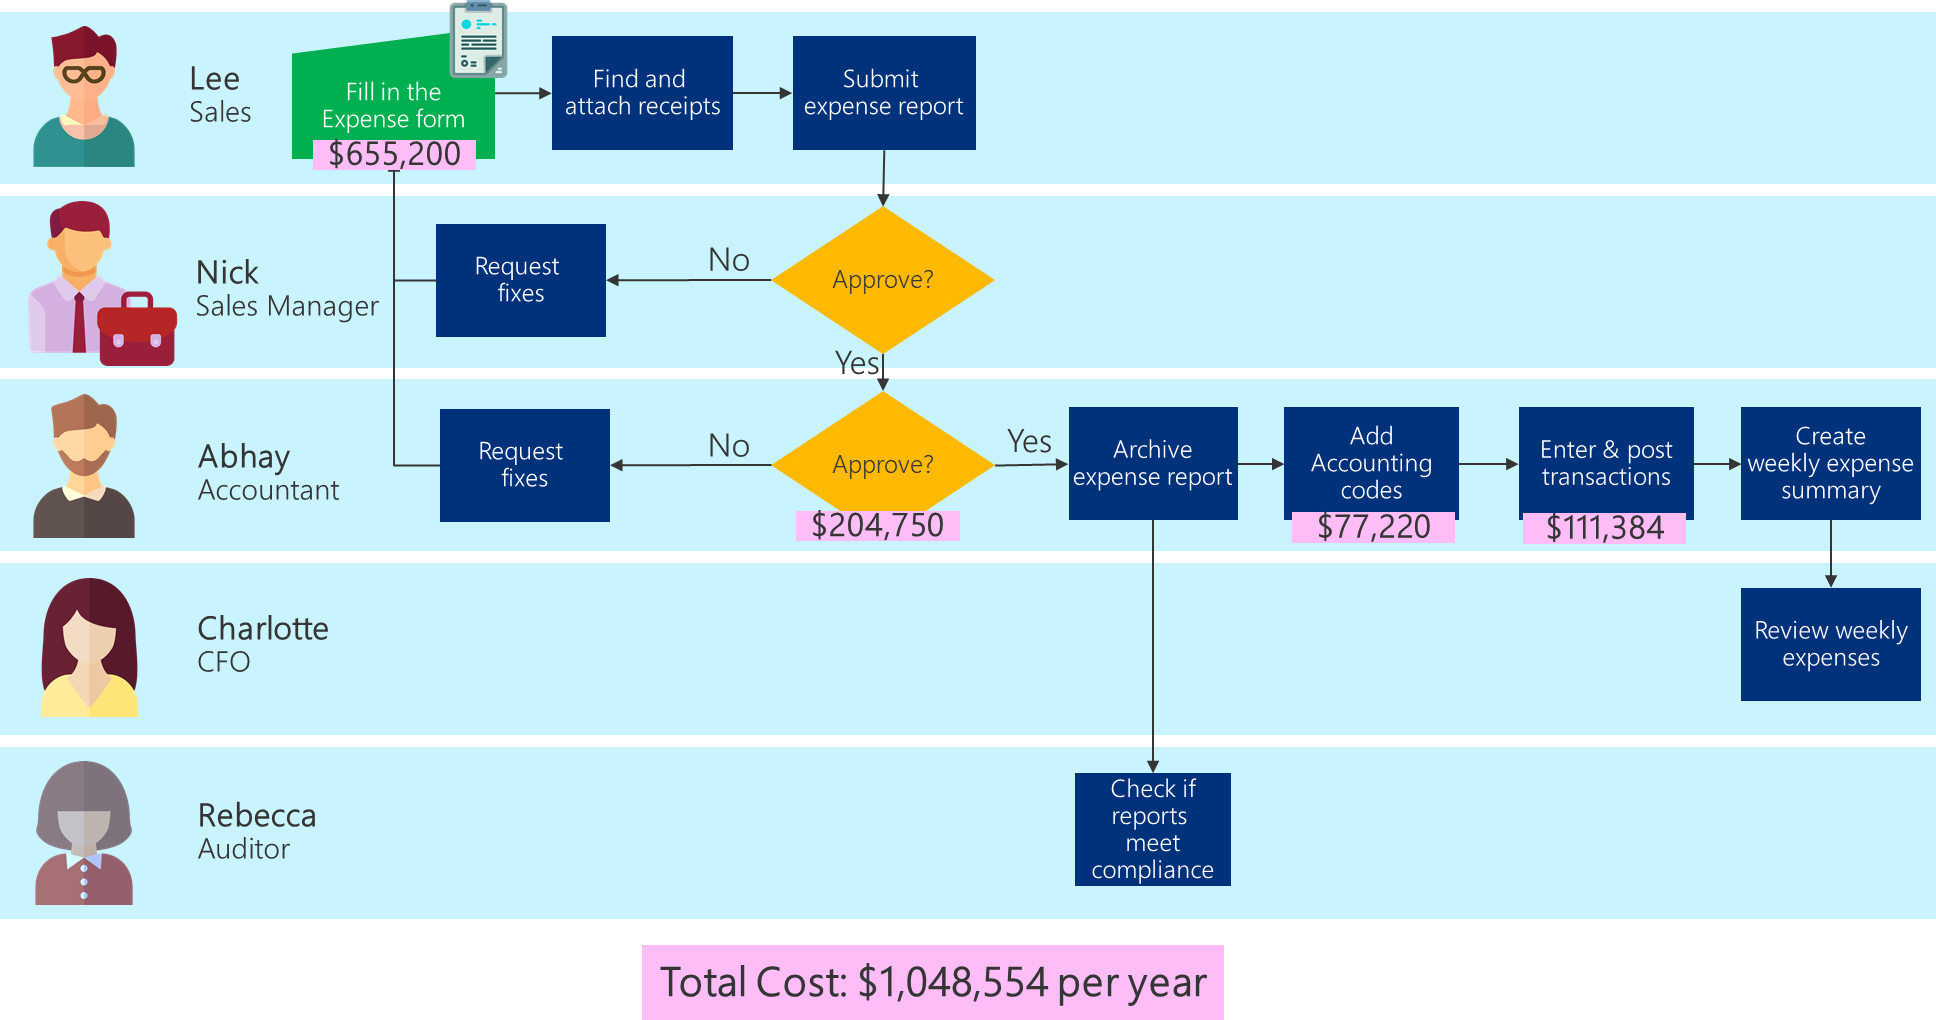 Grafikon poteka poslovnega procesa, ki prikazuje stroške zaposlenega za vsako opravilo ter skupne stroške procesa.